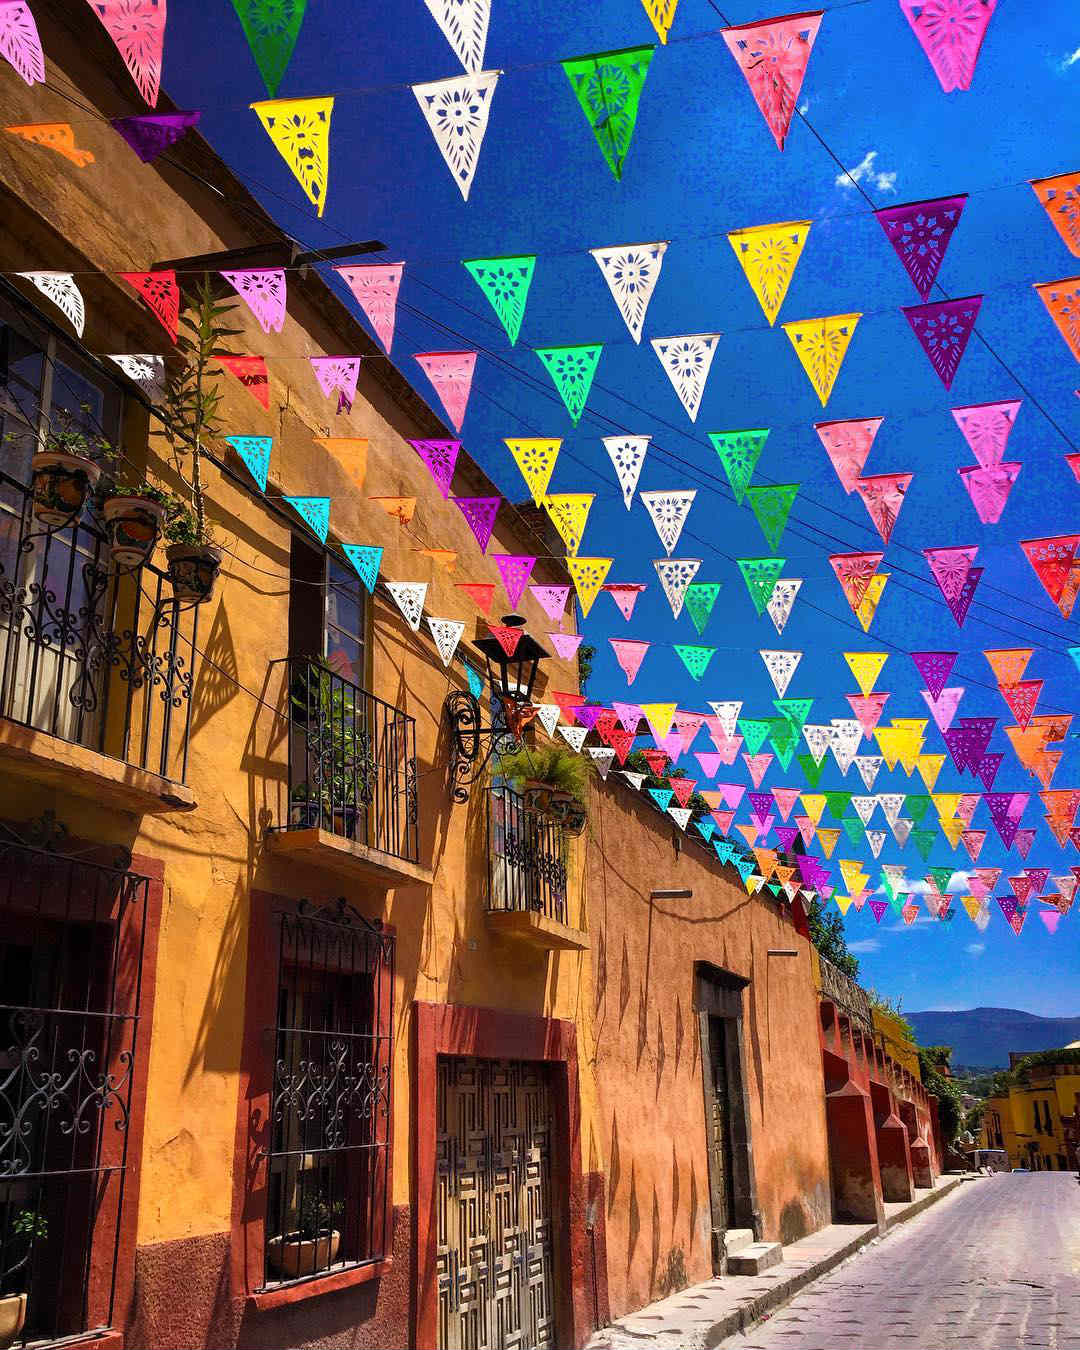 50 Magical Photos of Mexico